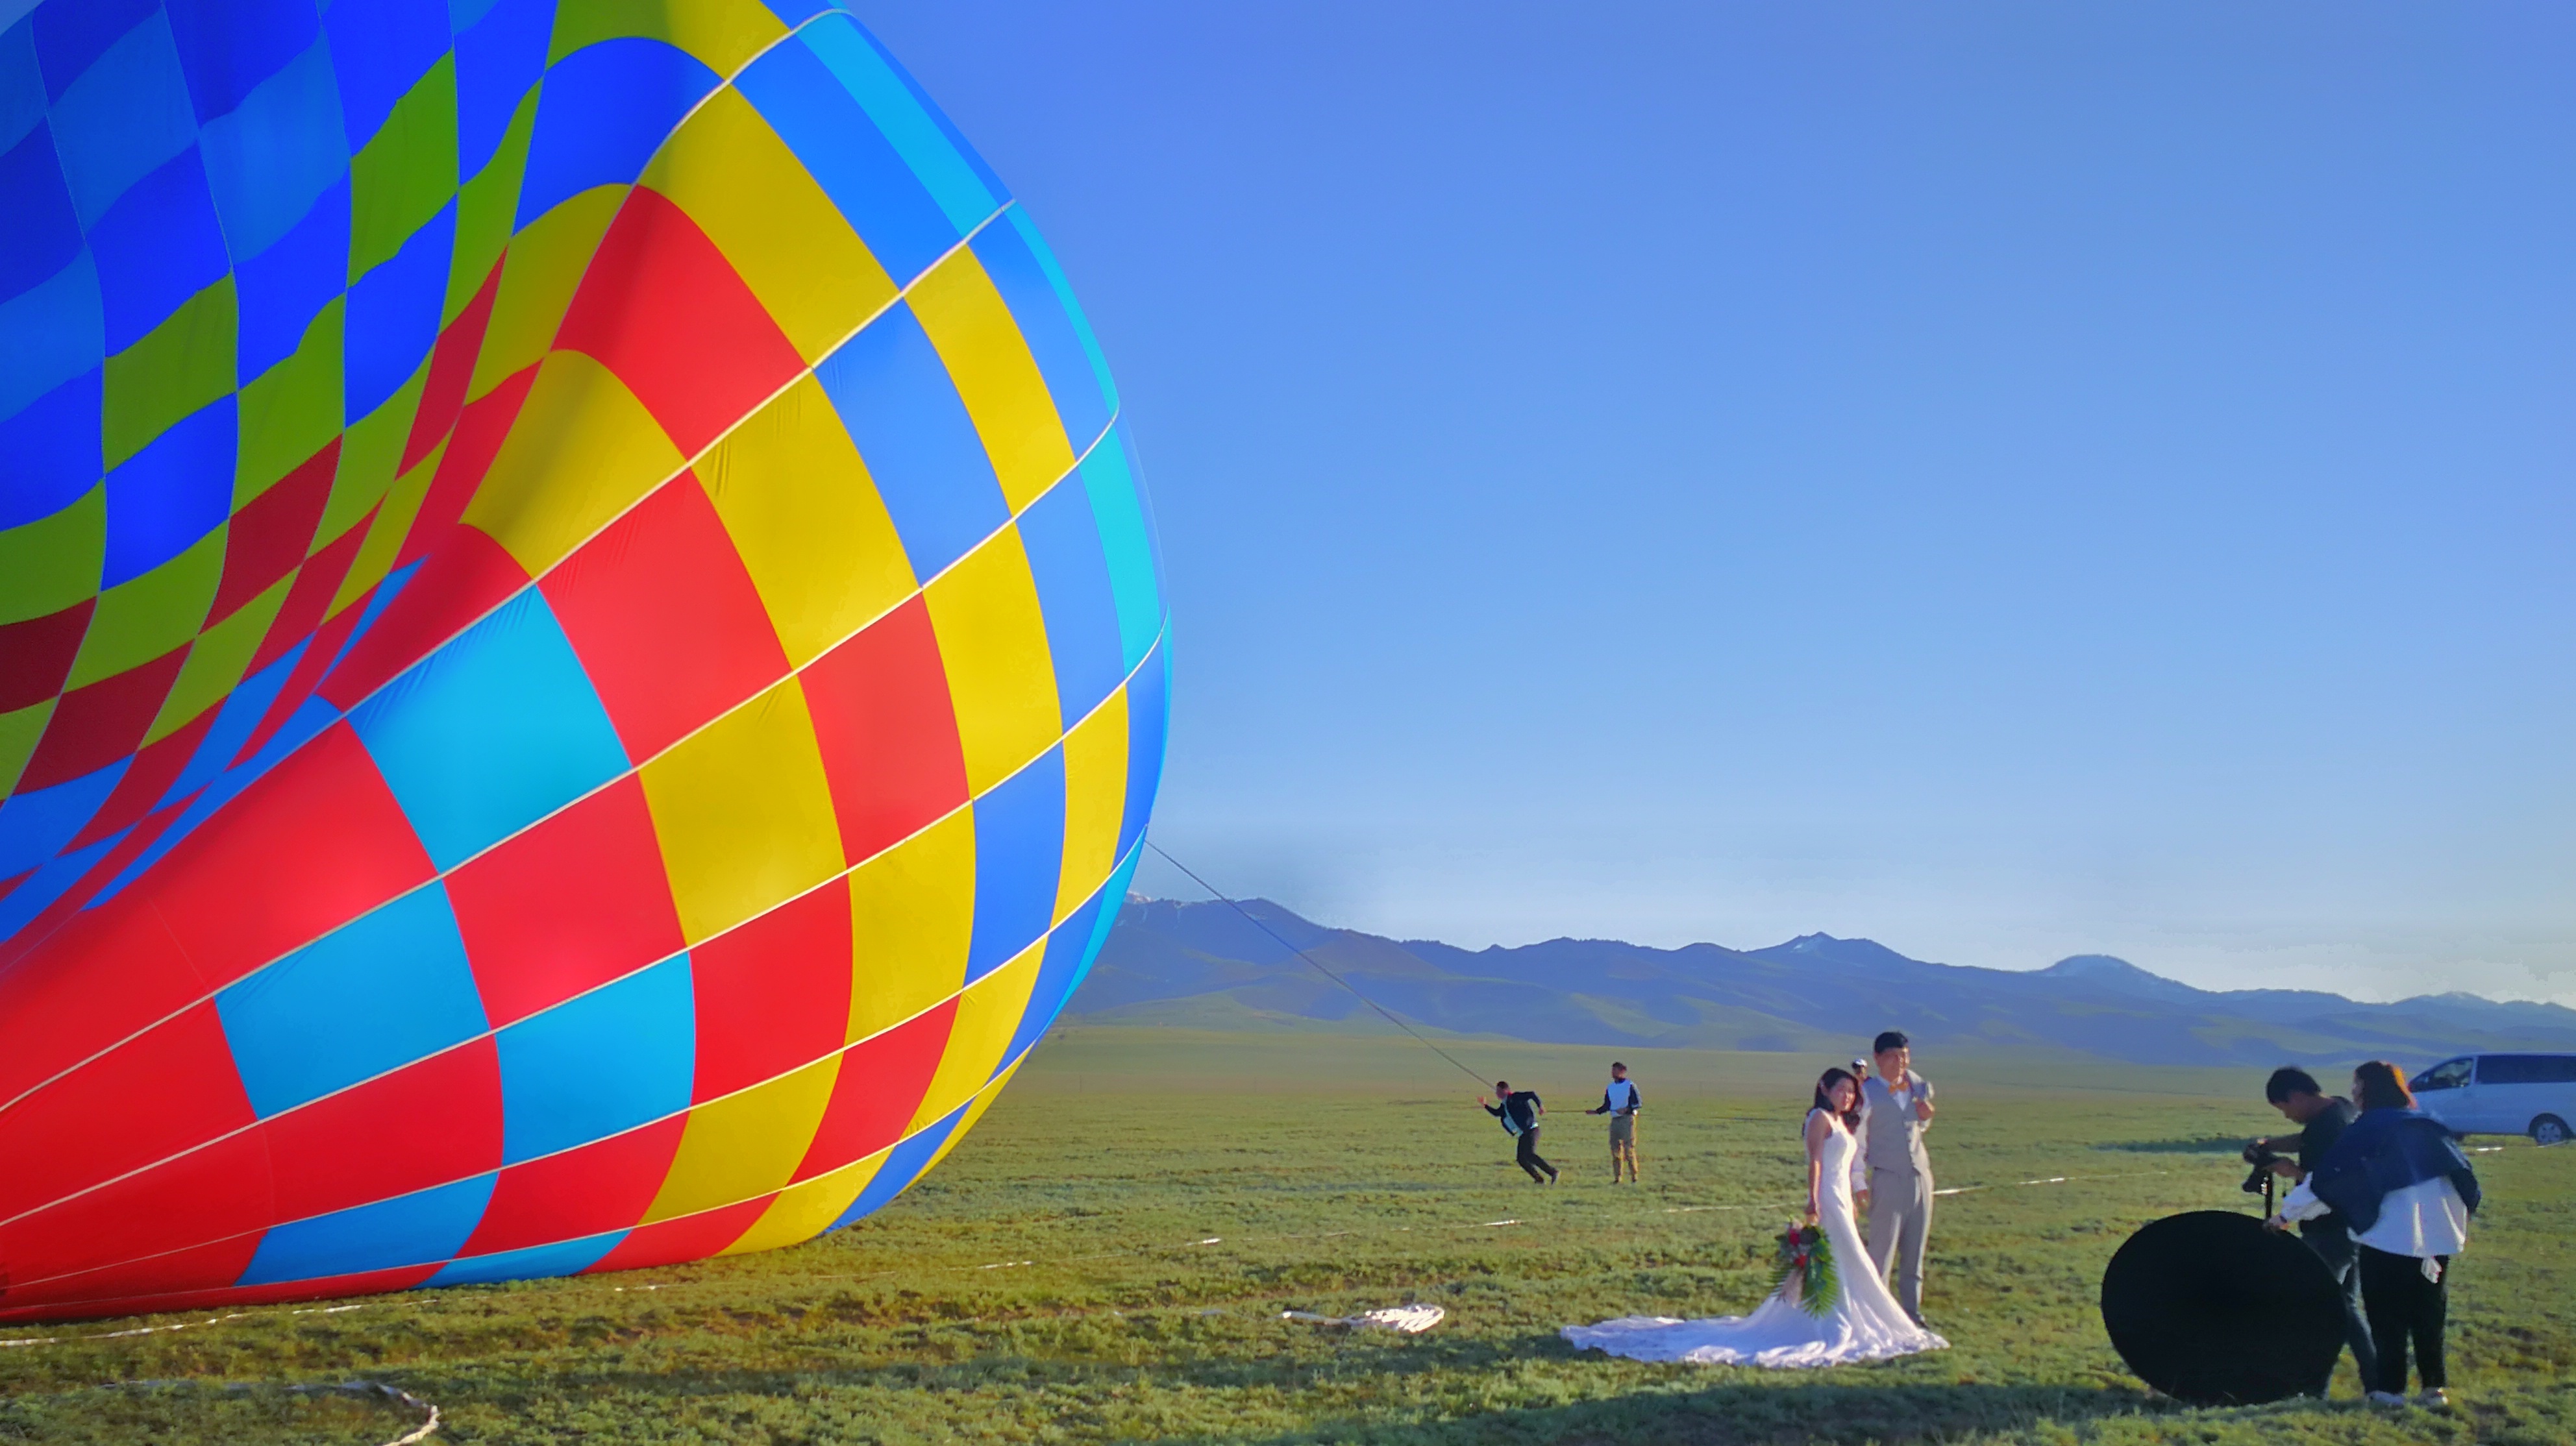 2023腾冲热气球飞行俱乐部玩乐攻略,这是国内唯一一个对外开放的...【去哪儿攻略】